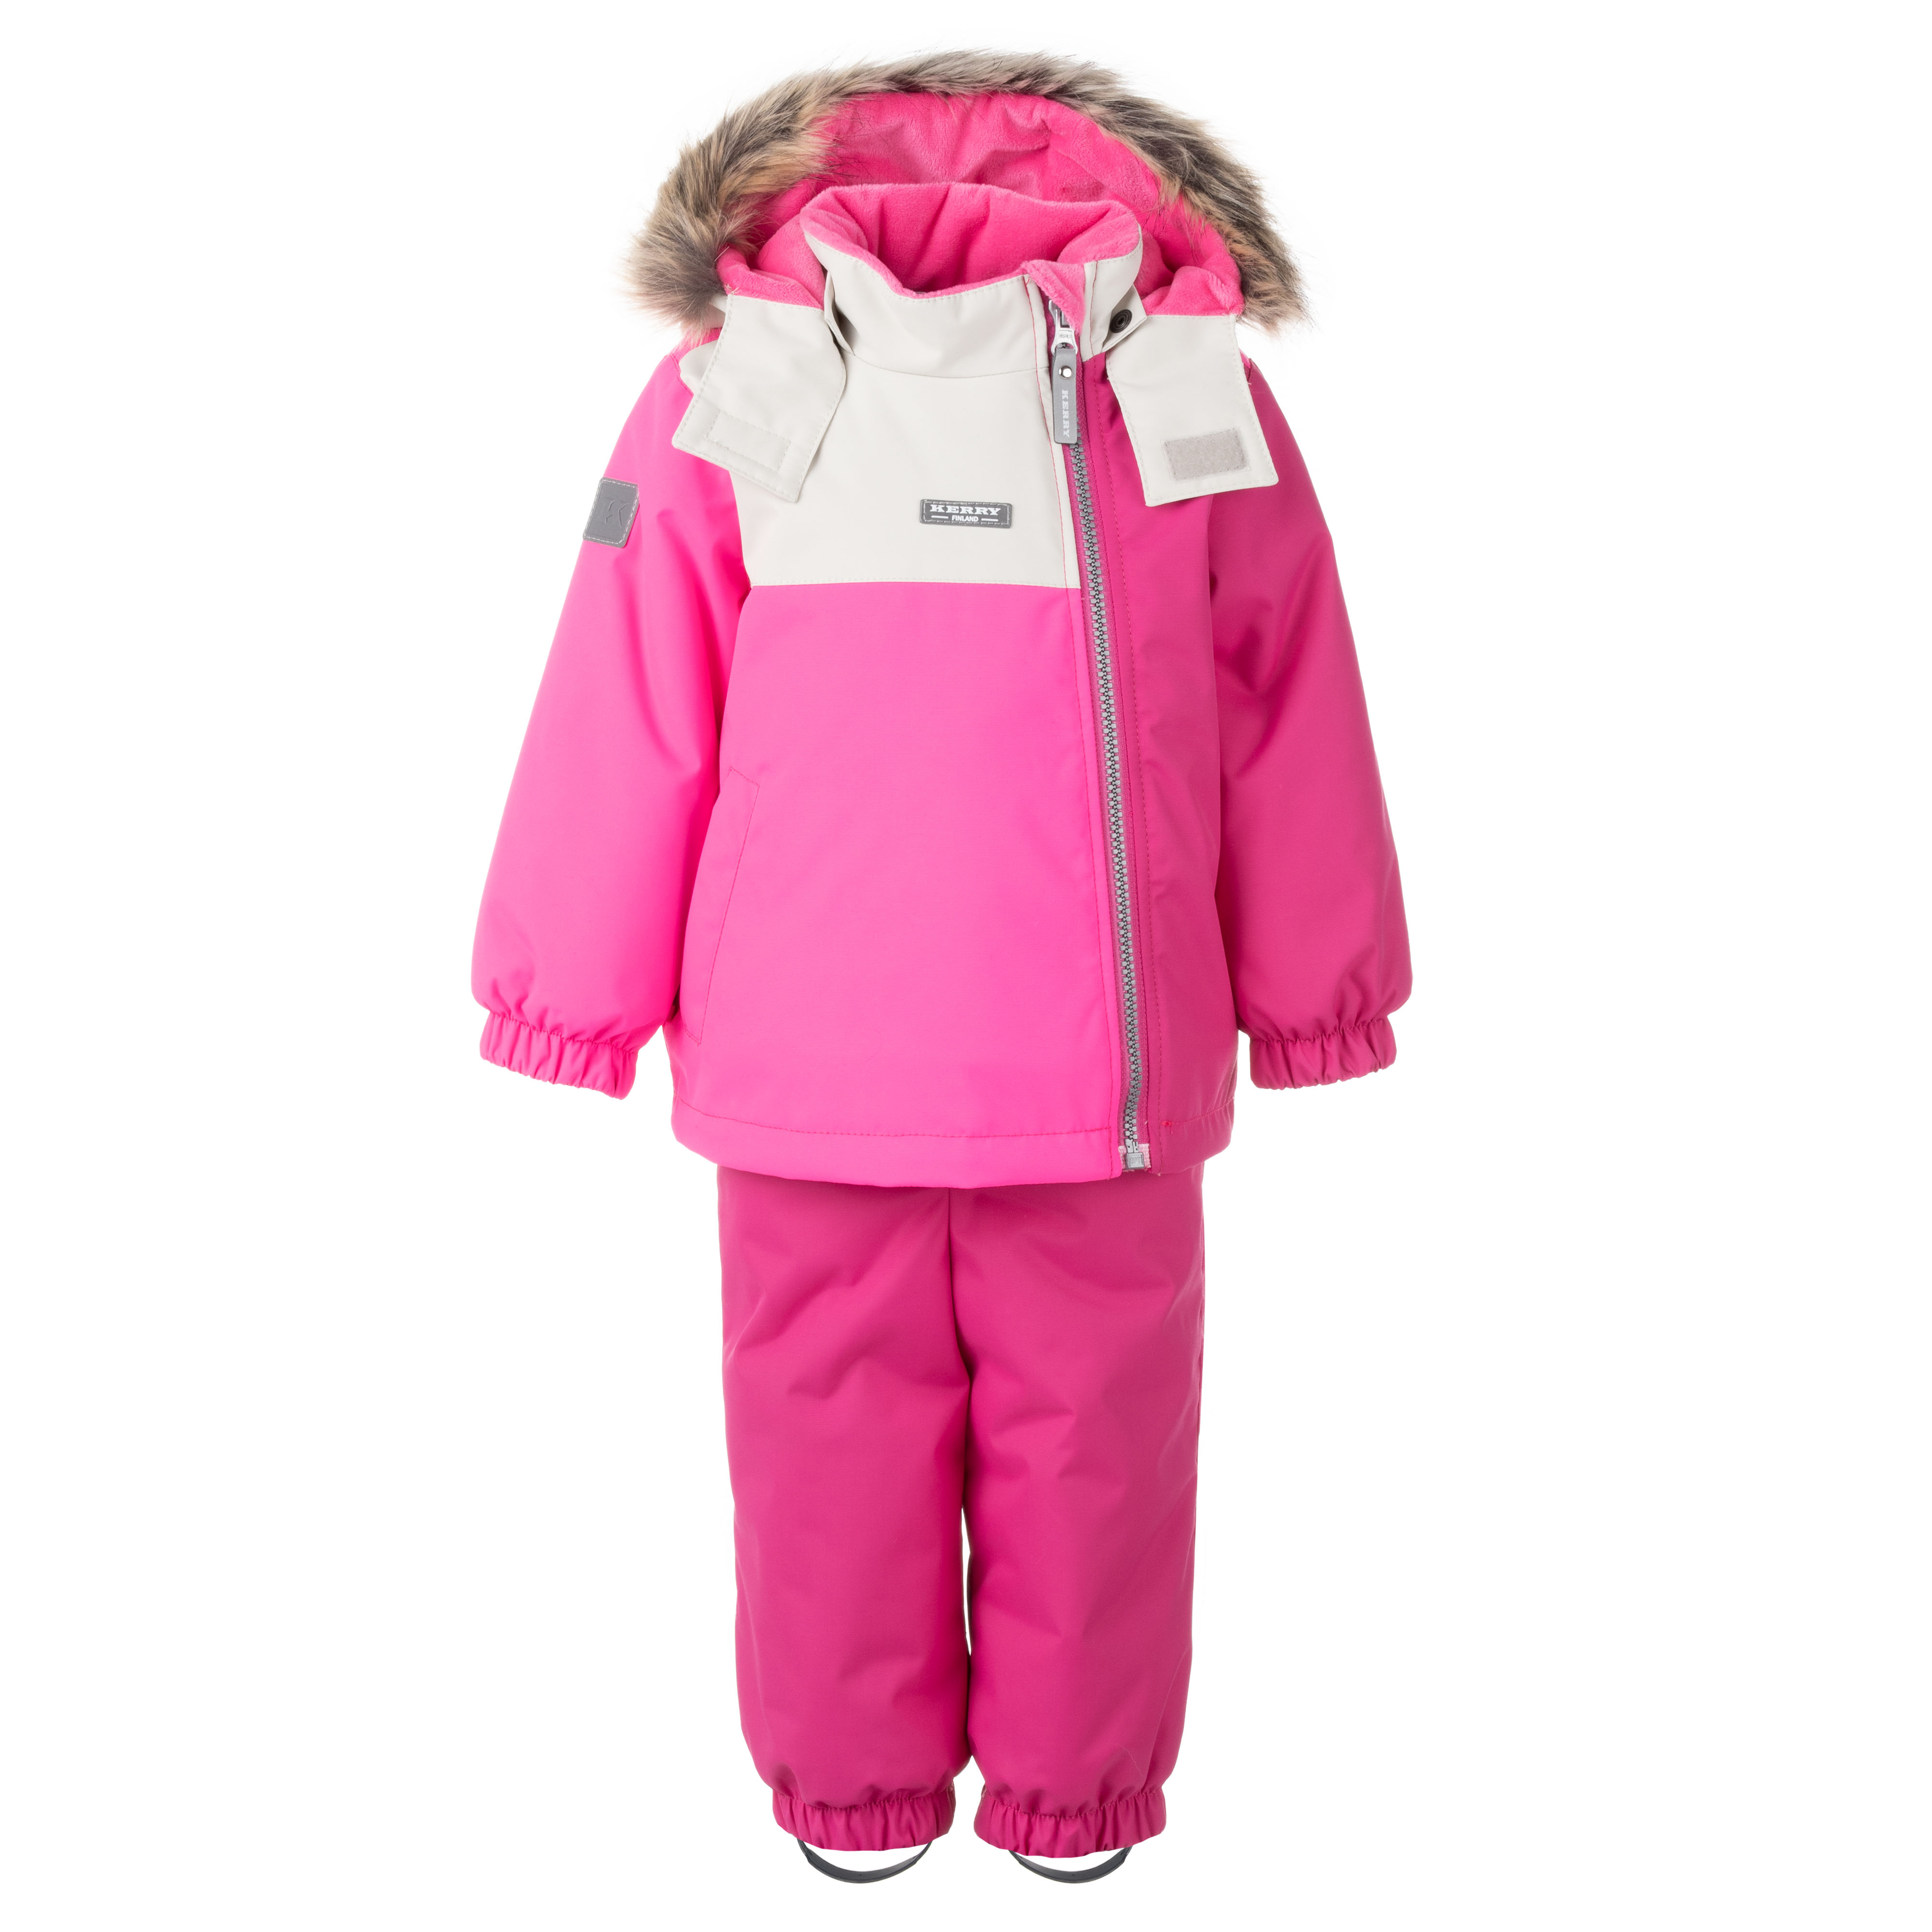 Комплект верхней одежды детский KERRY K22417, розовый, 86.